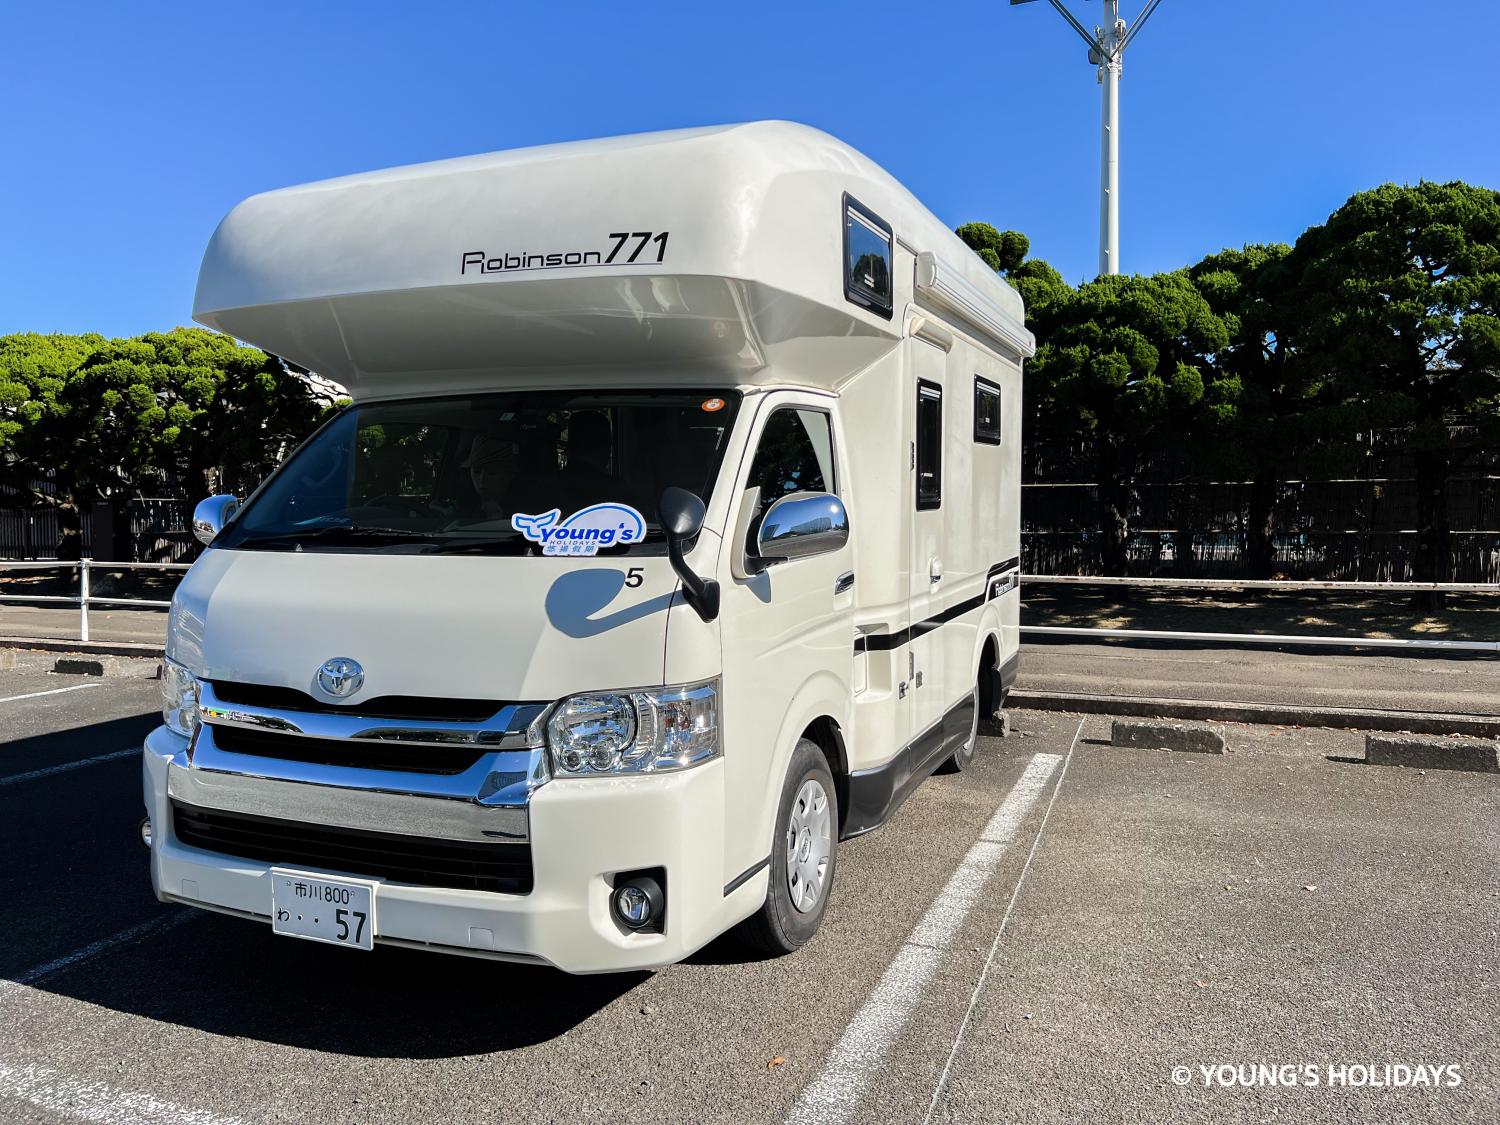 【Okinawa】Japan 5ppl RV Caravan 48 hours Flight & Drive Package(CRB771)